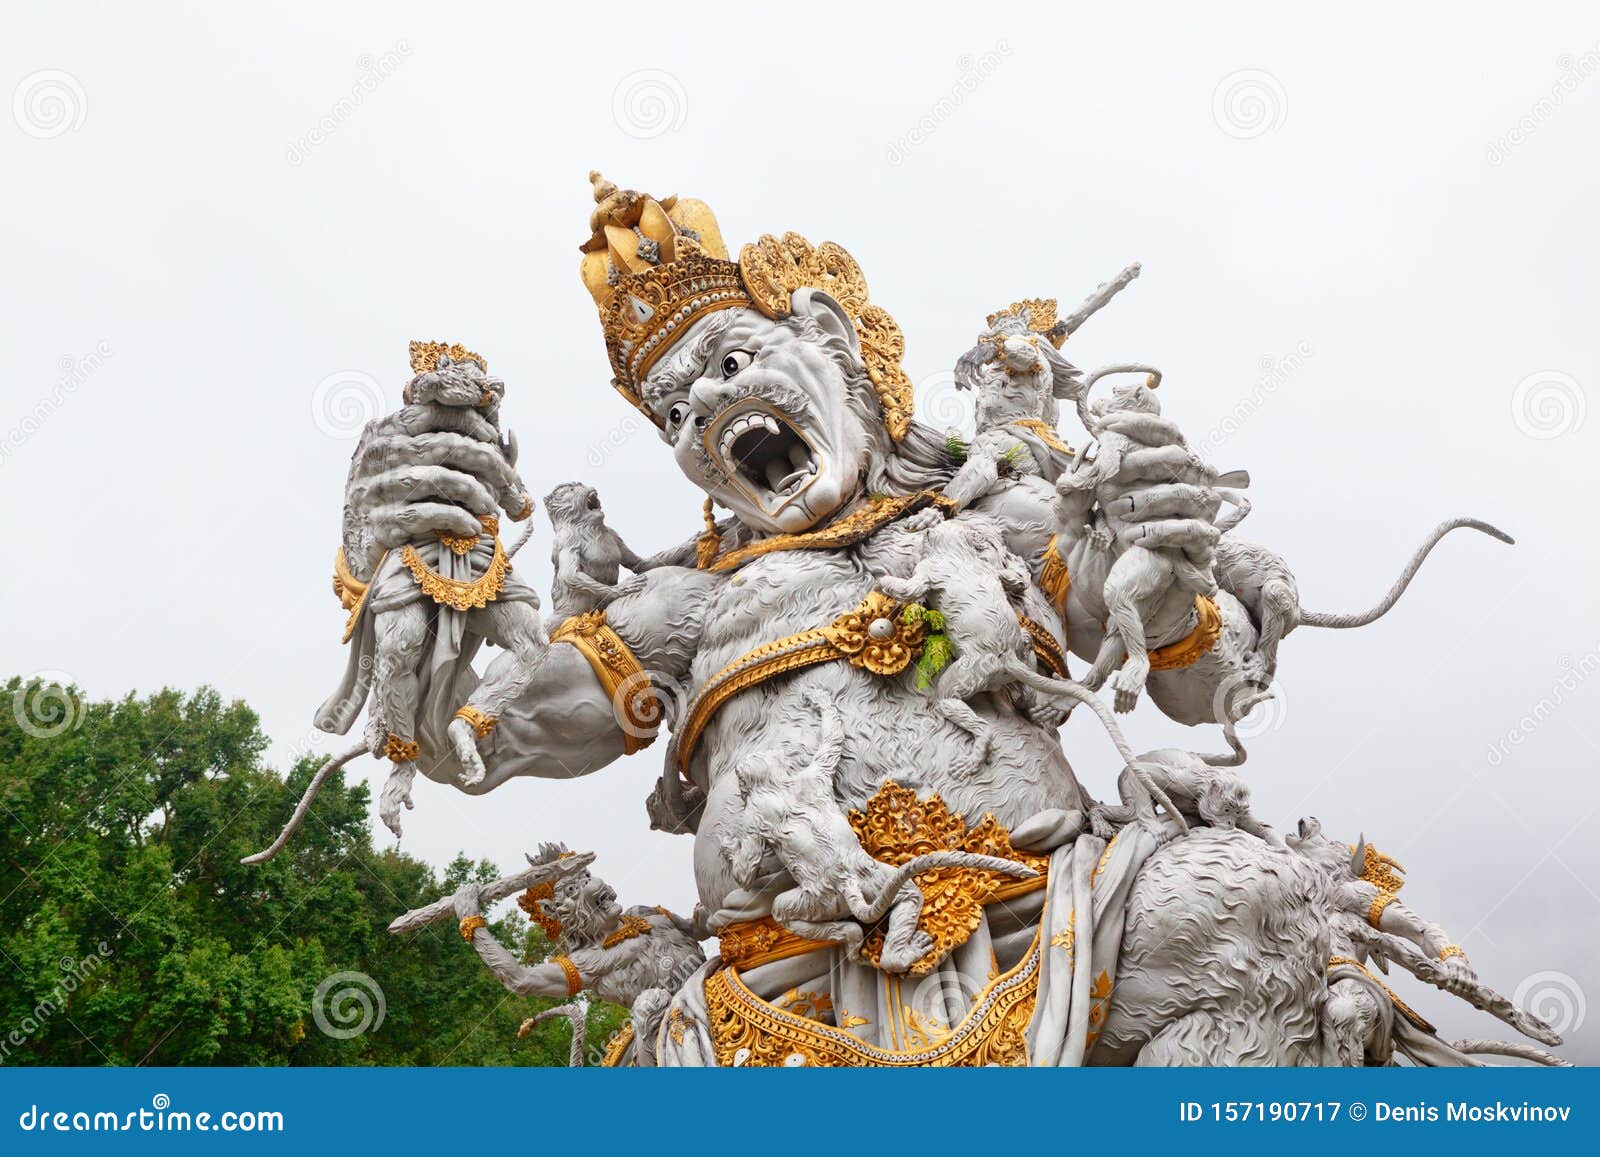 Ancient Statue of Kumbhakarna in Bedugul Botanical Garden, Bali, Indonesia  Stock Image - Image of kumbakarna, epic: 157190717